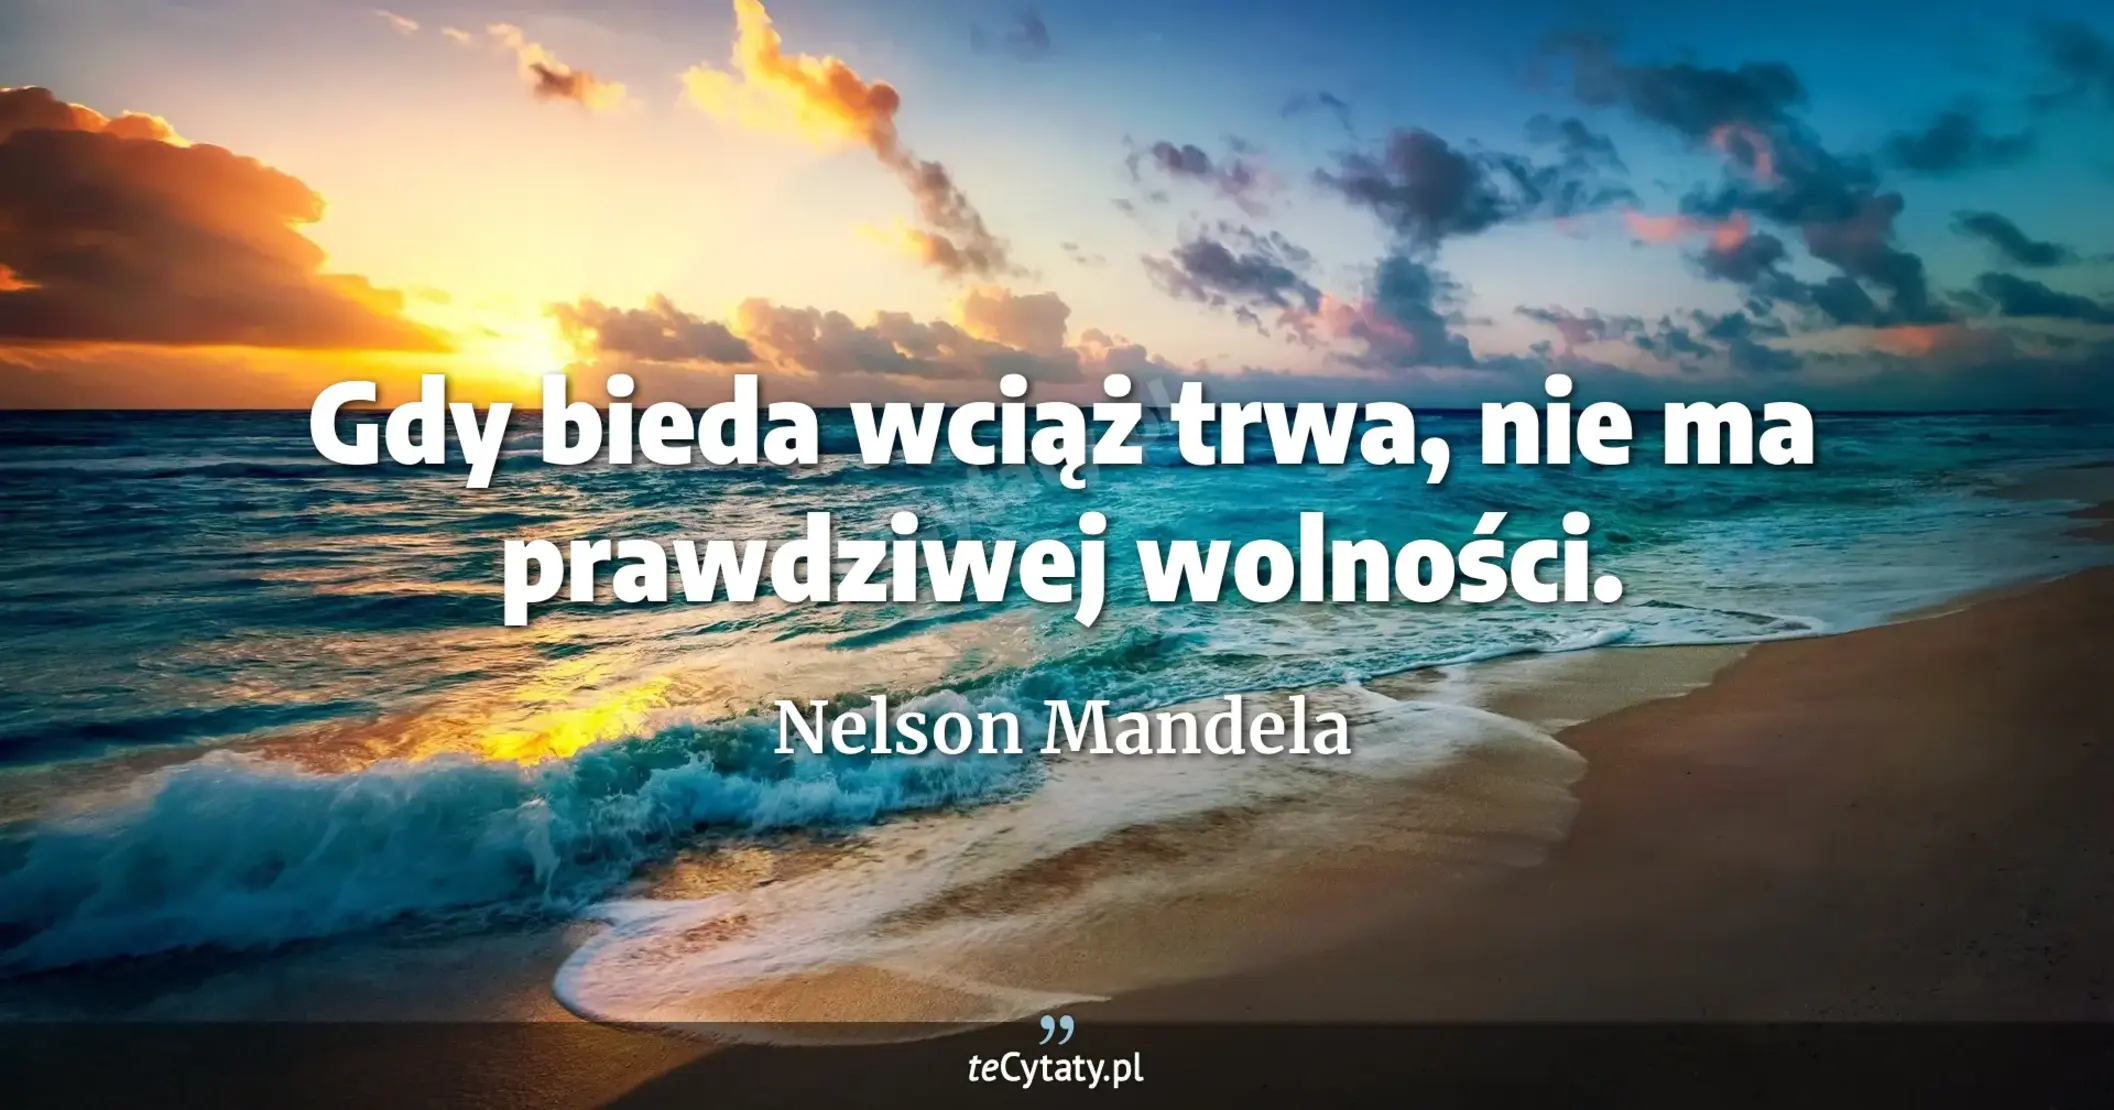 Gdy bieda wciąż trwa, nie ma prawdziwej wolności. - Nelson Mandela